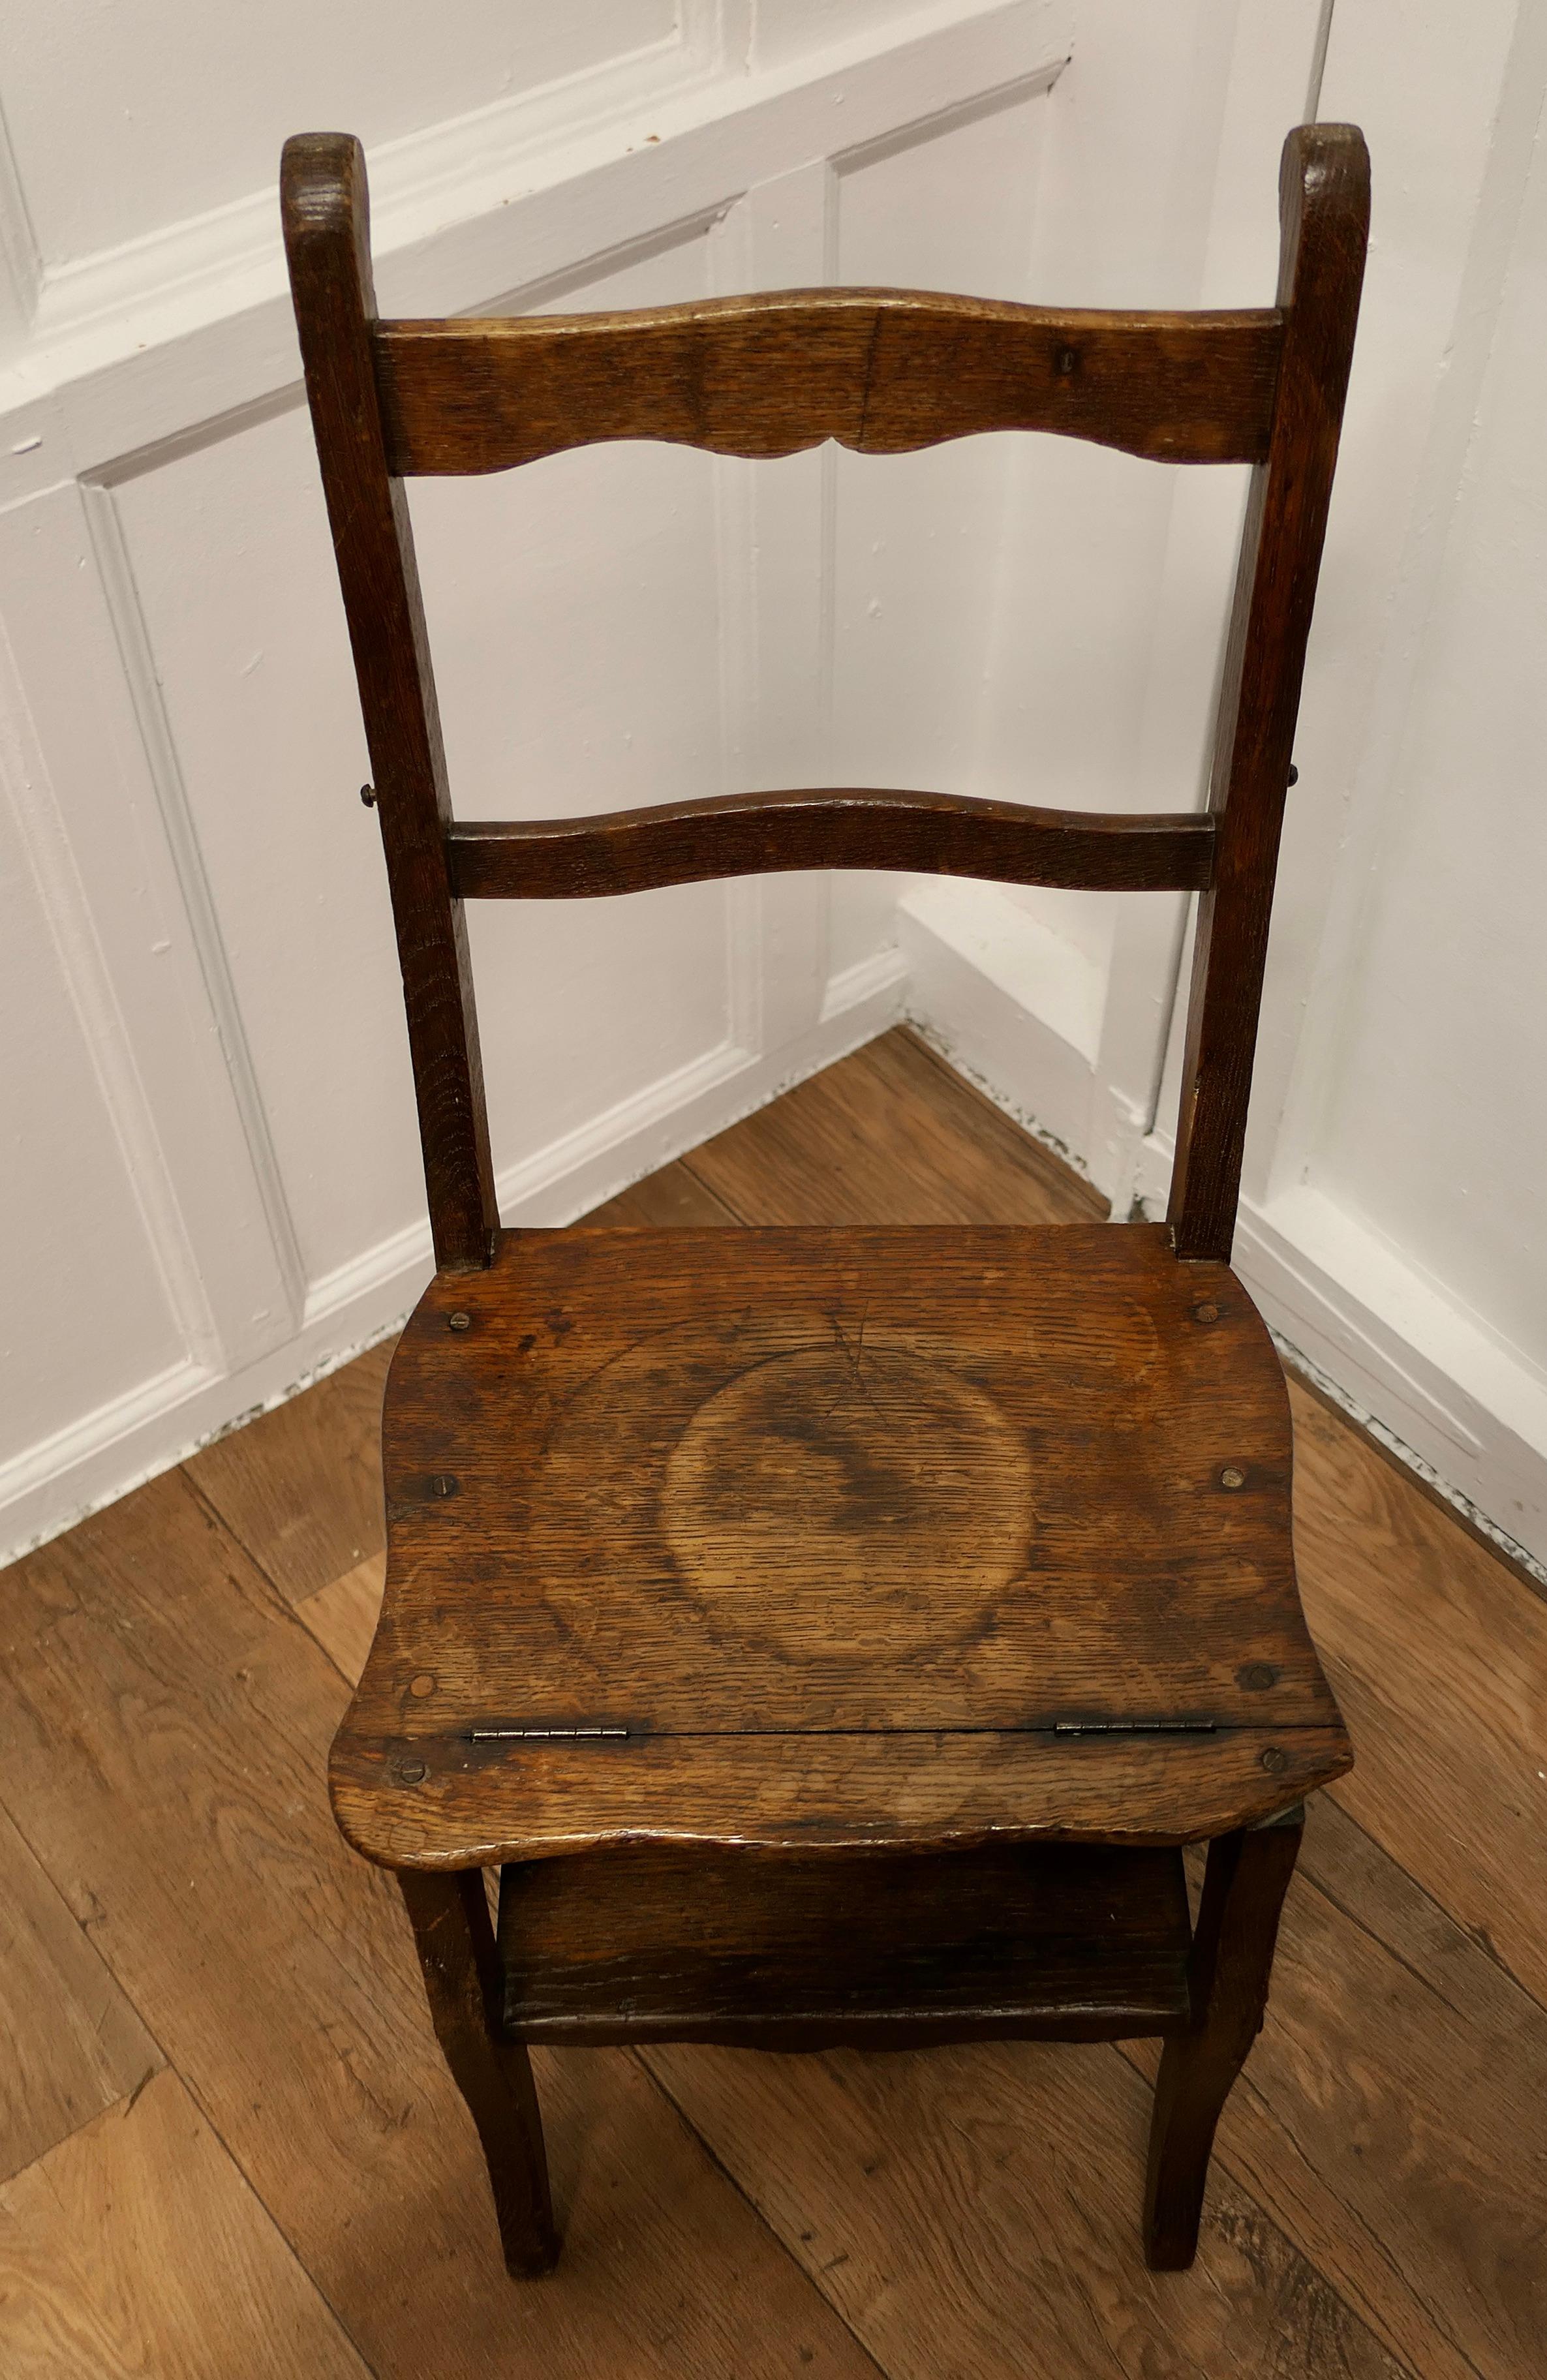 Chaise métamorphique et marches sinueuses de style campagnard français, une pièce très utile  Bon état - En vente à Chillerton, Isle of Wight